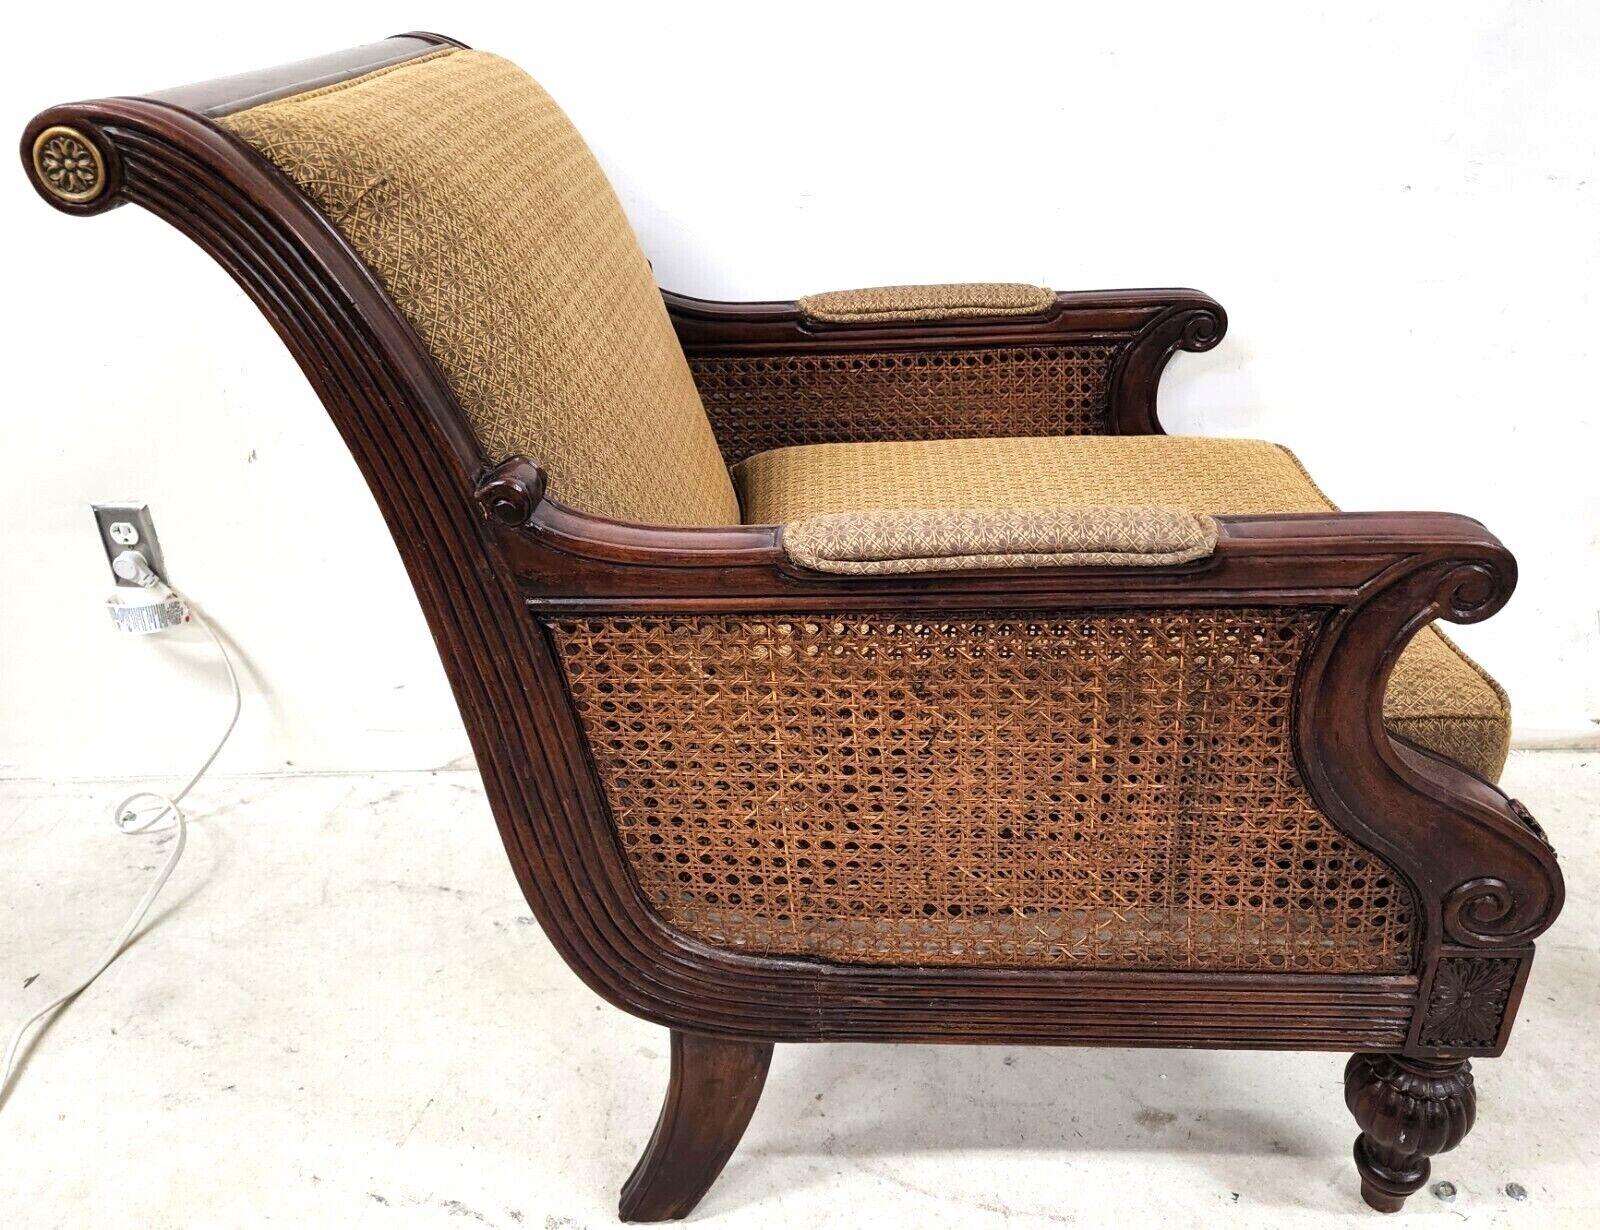 Offrant l'une de nos récentes acquisitions de meubles fins Palm Beach Estate de A 
Vintage Double Caned Lounge Club Chair by SCHNADIG

Mesures approximatives en pouces
36